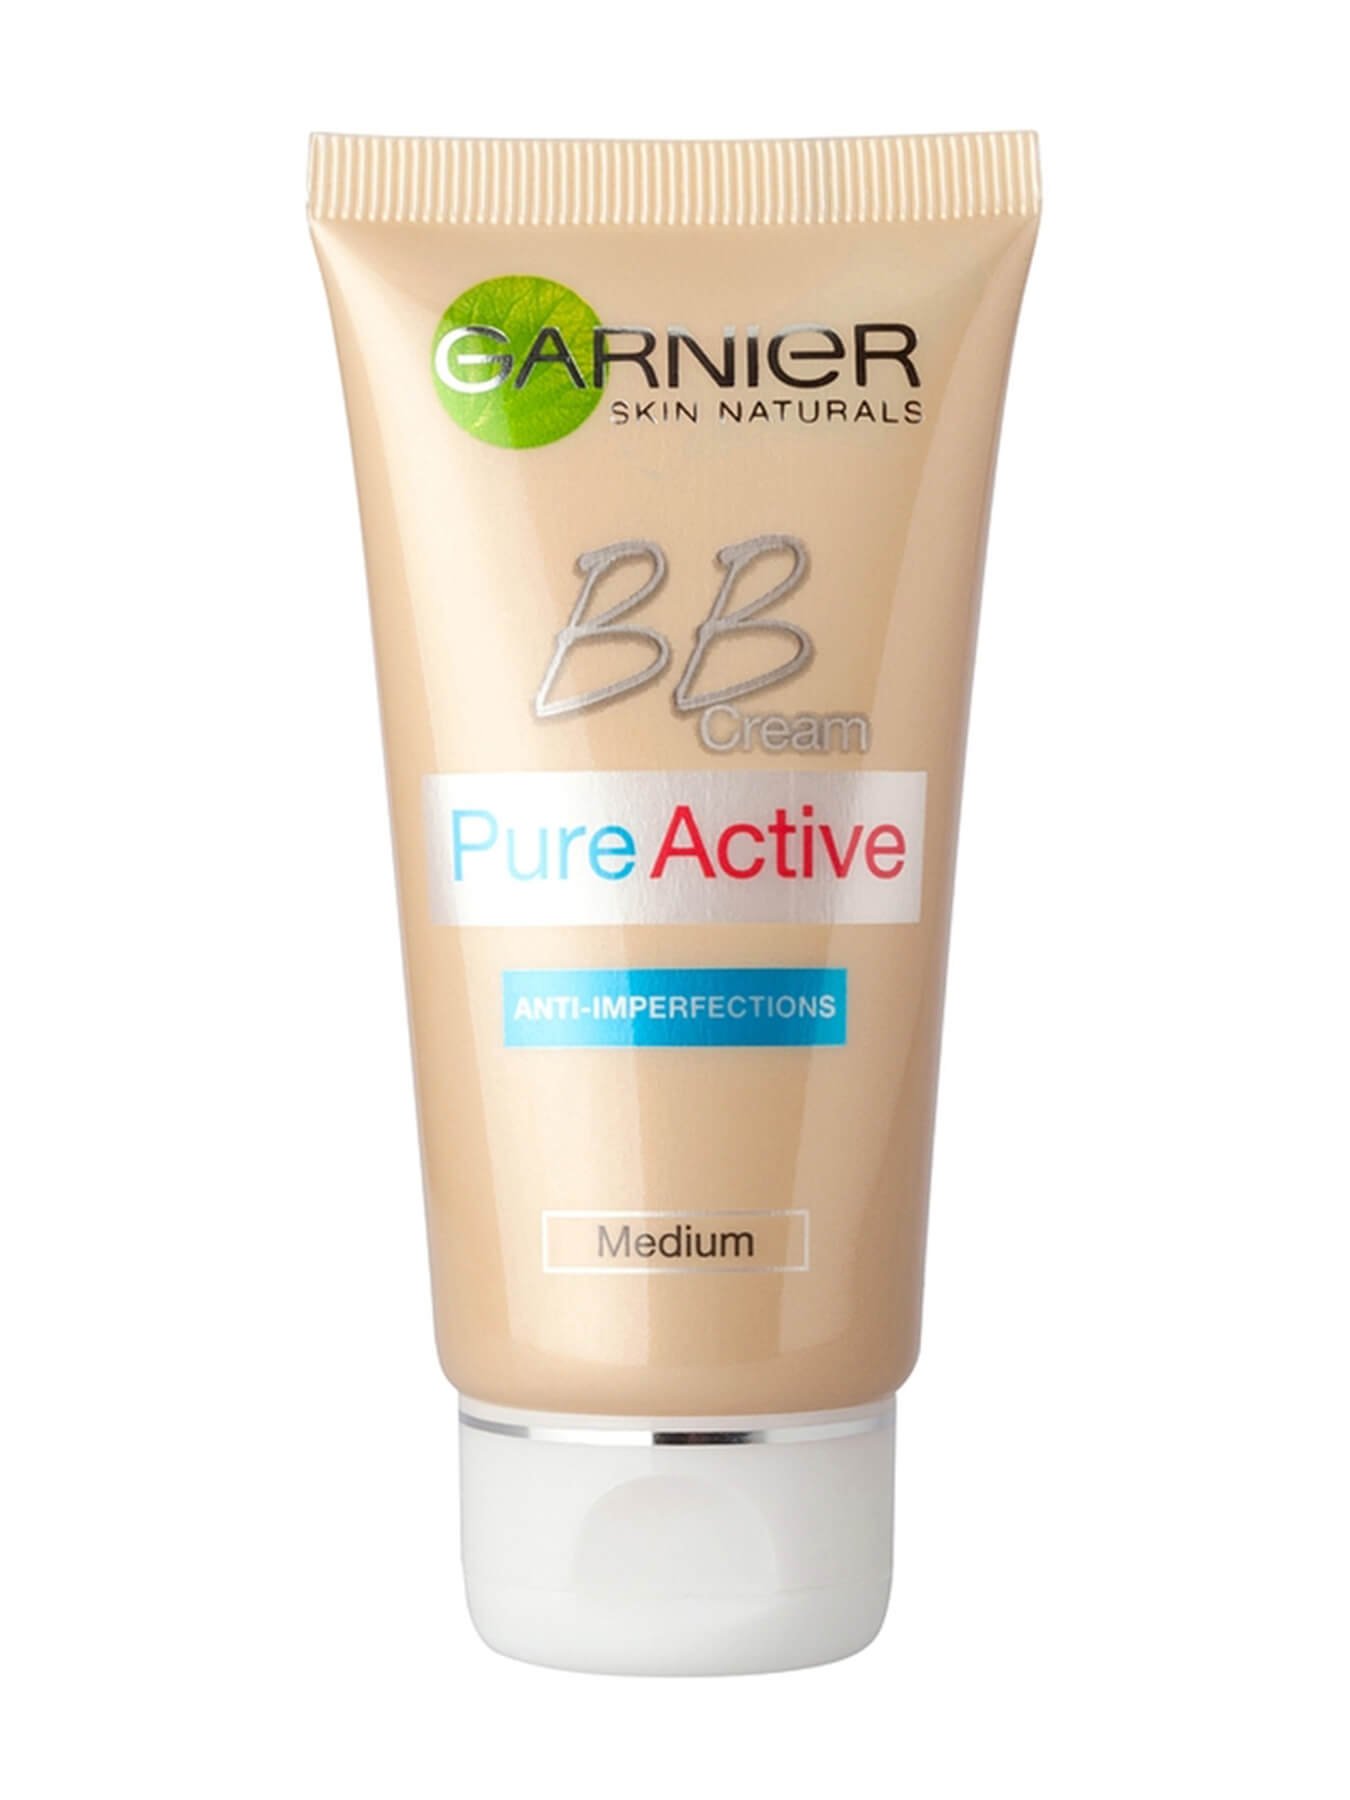 Garnier Skin Naturals Pure Active BB 5u1 krema za kožu sa nesavršenostima Medium 